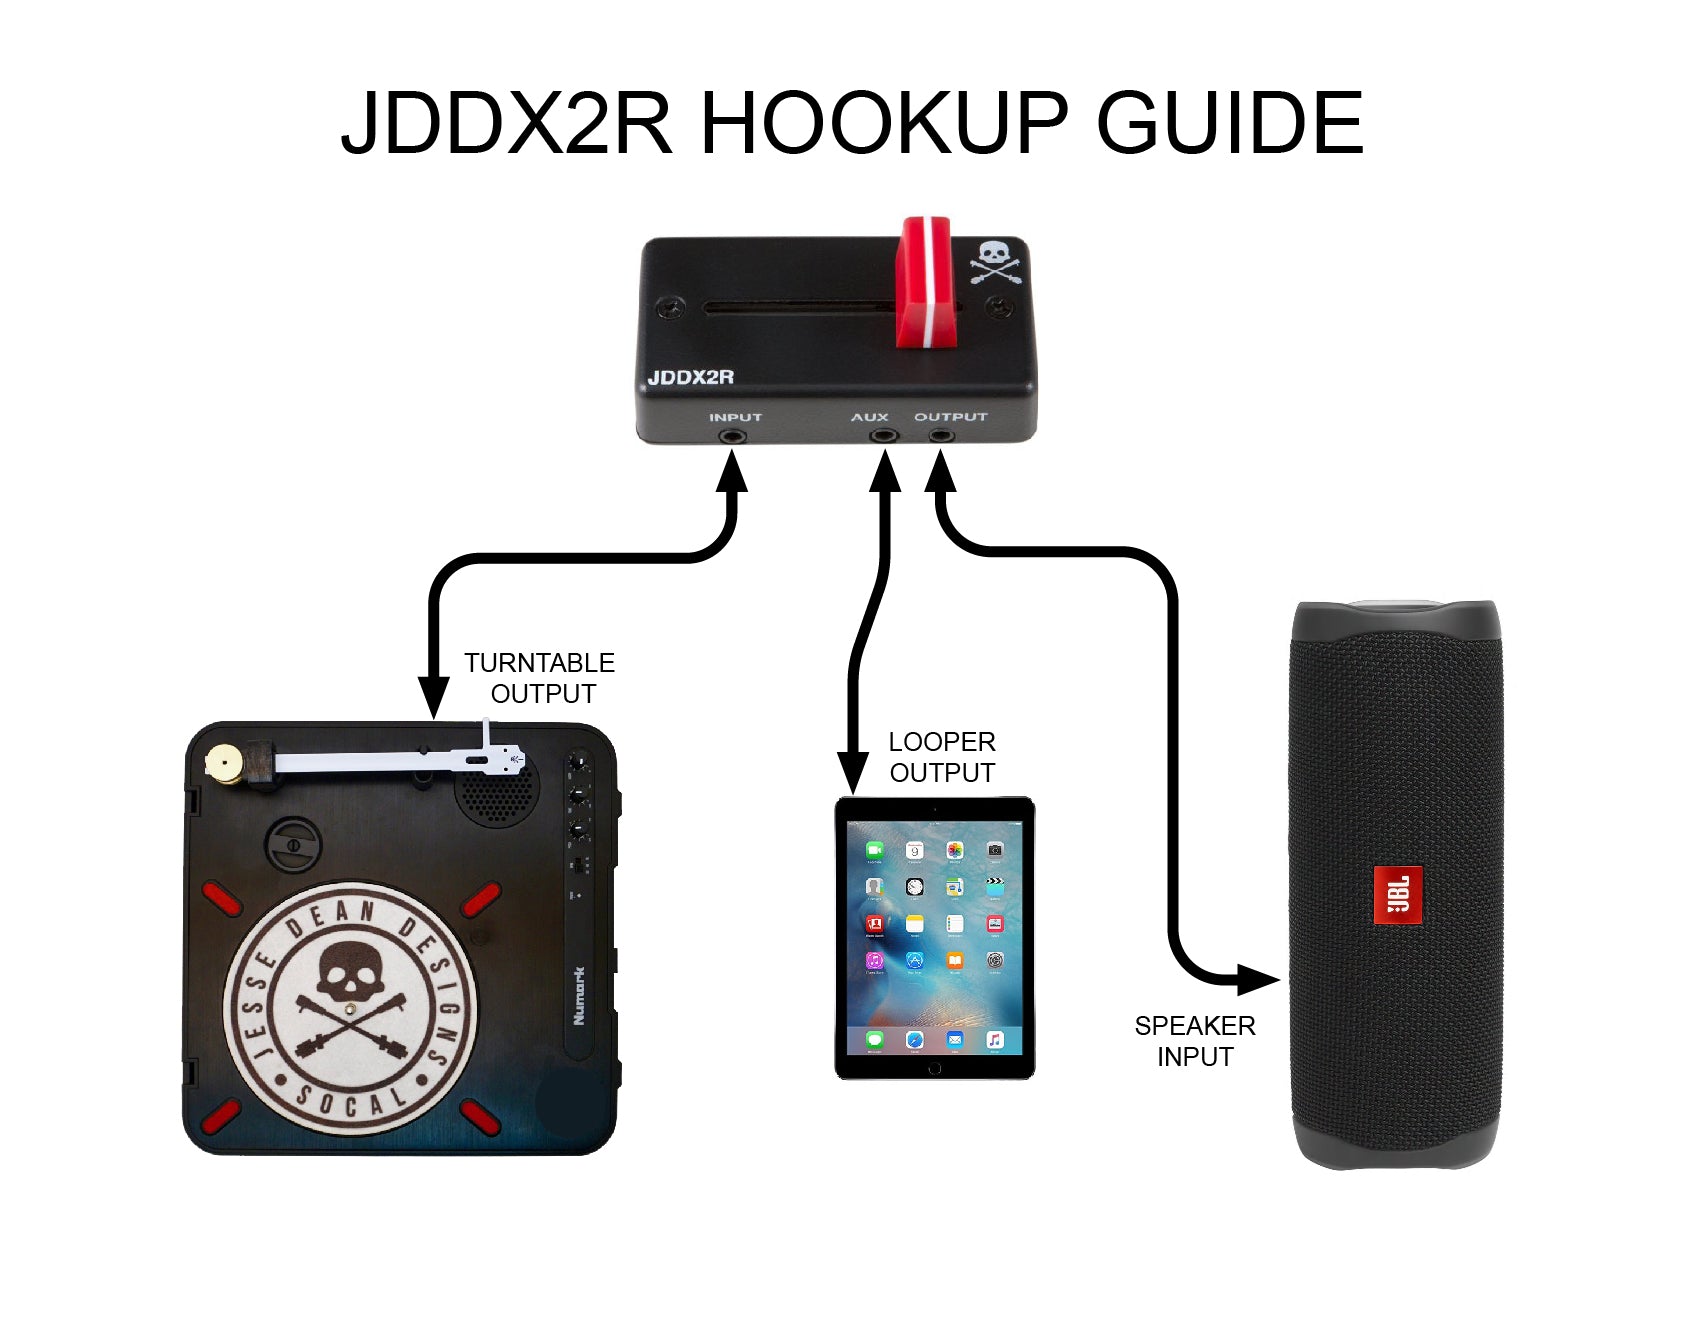 JDDX2R PORTABLE FADER – Jesse Dean Designs